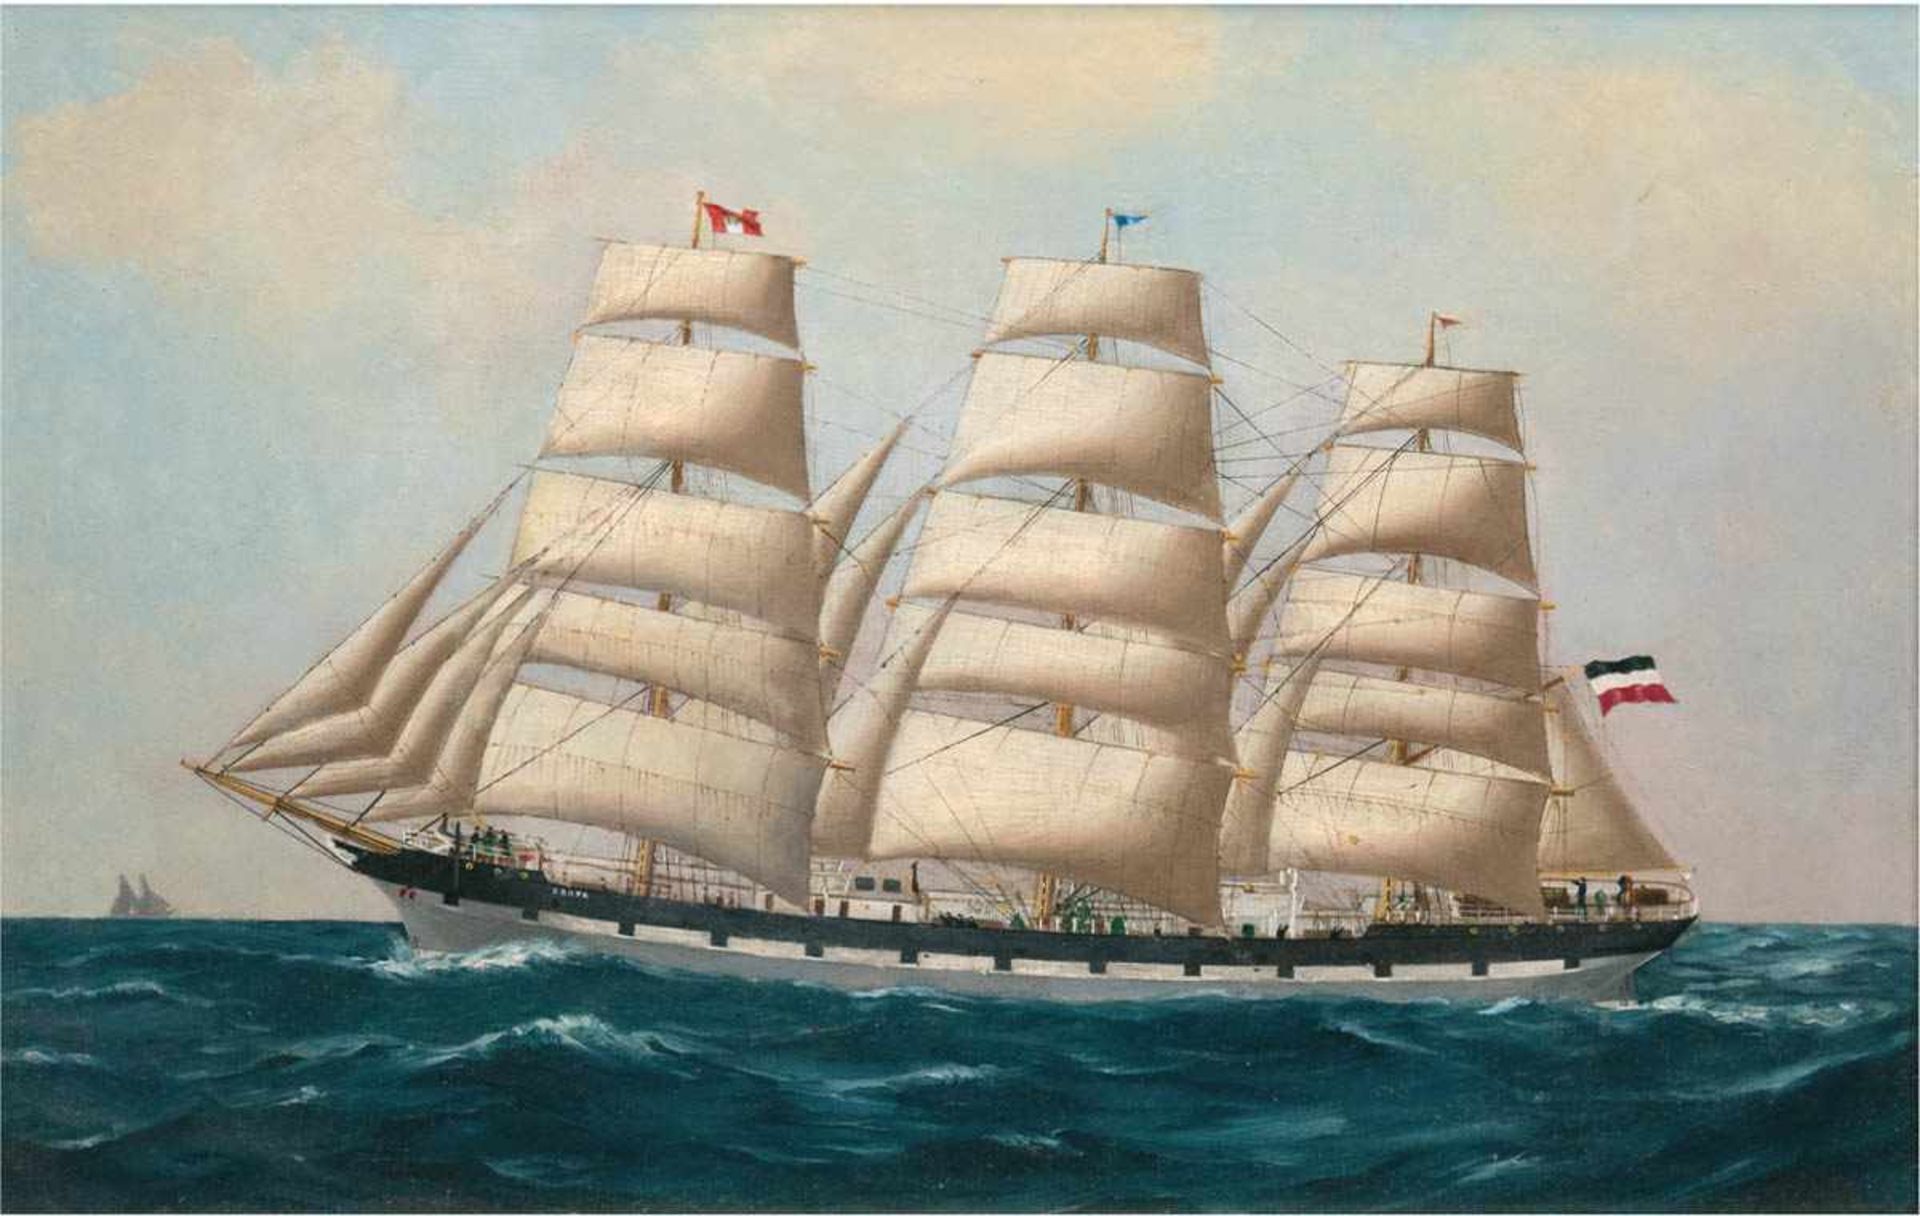 Kapitänsbild des 19. Jh. "Dreimaster 'Erato' auf ruhiger See", Öl/Lw., unsign.,